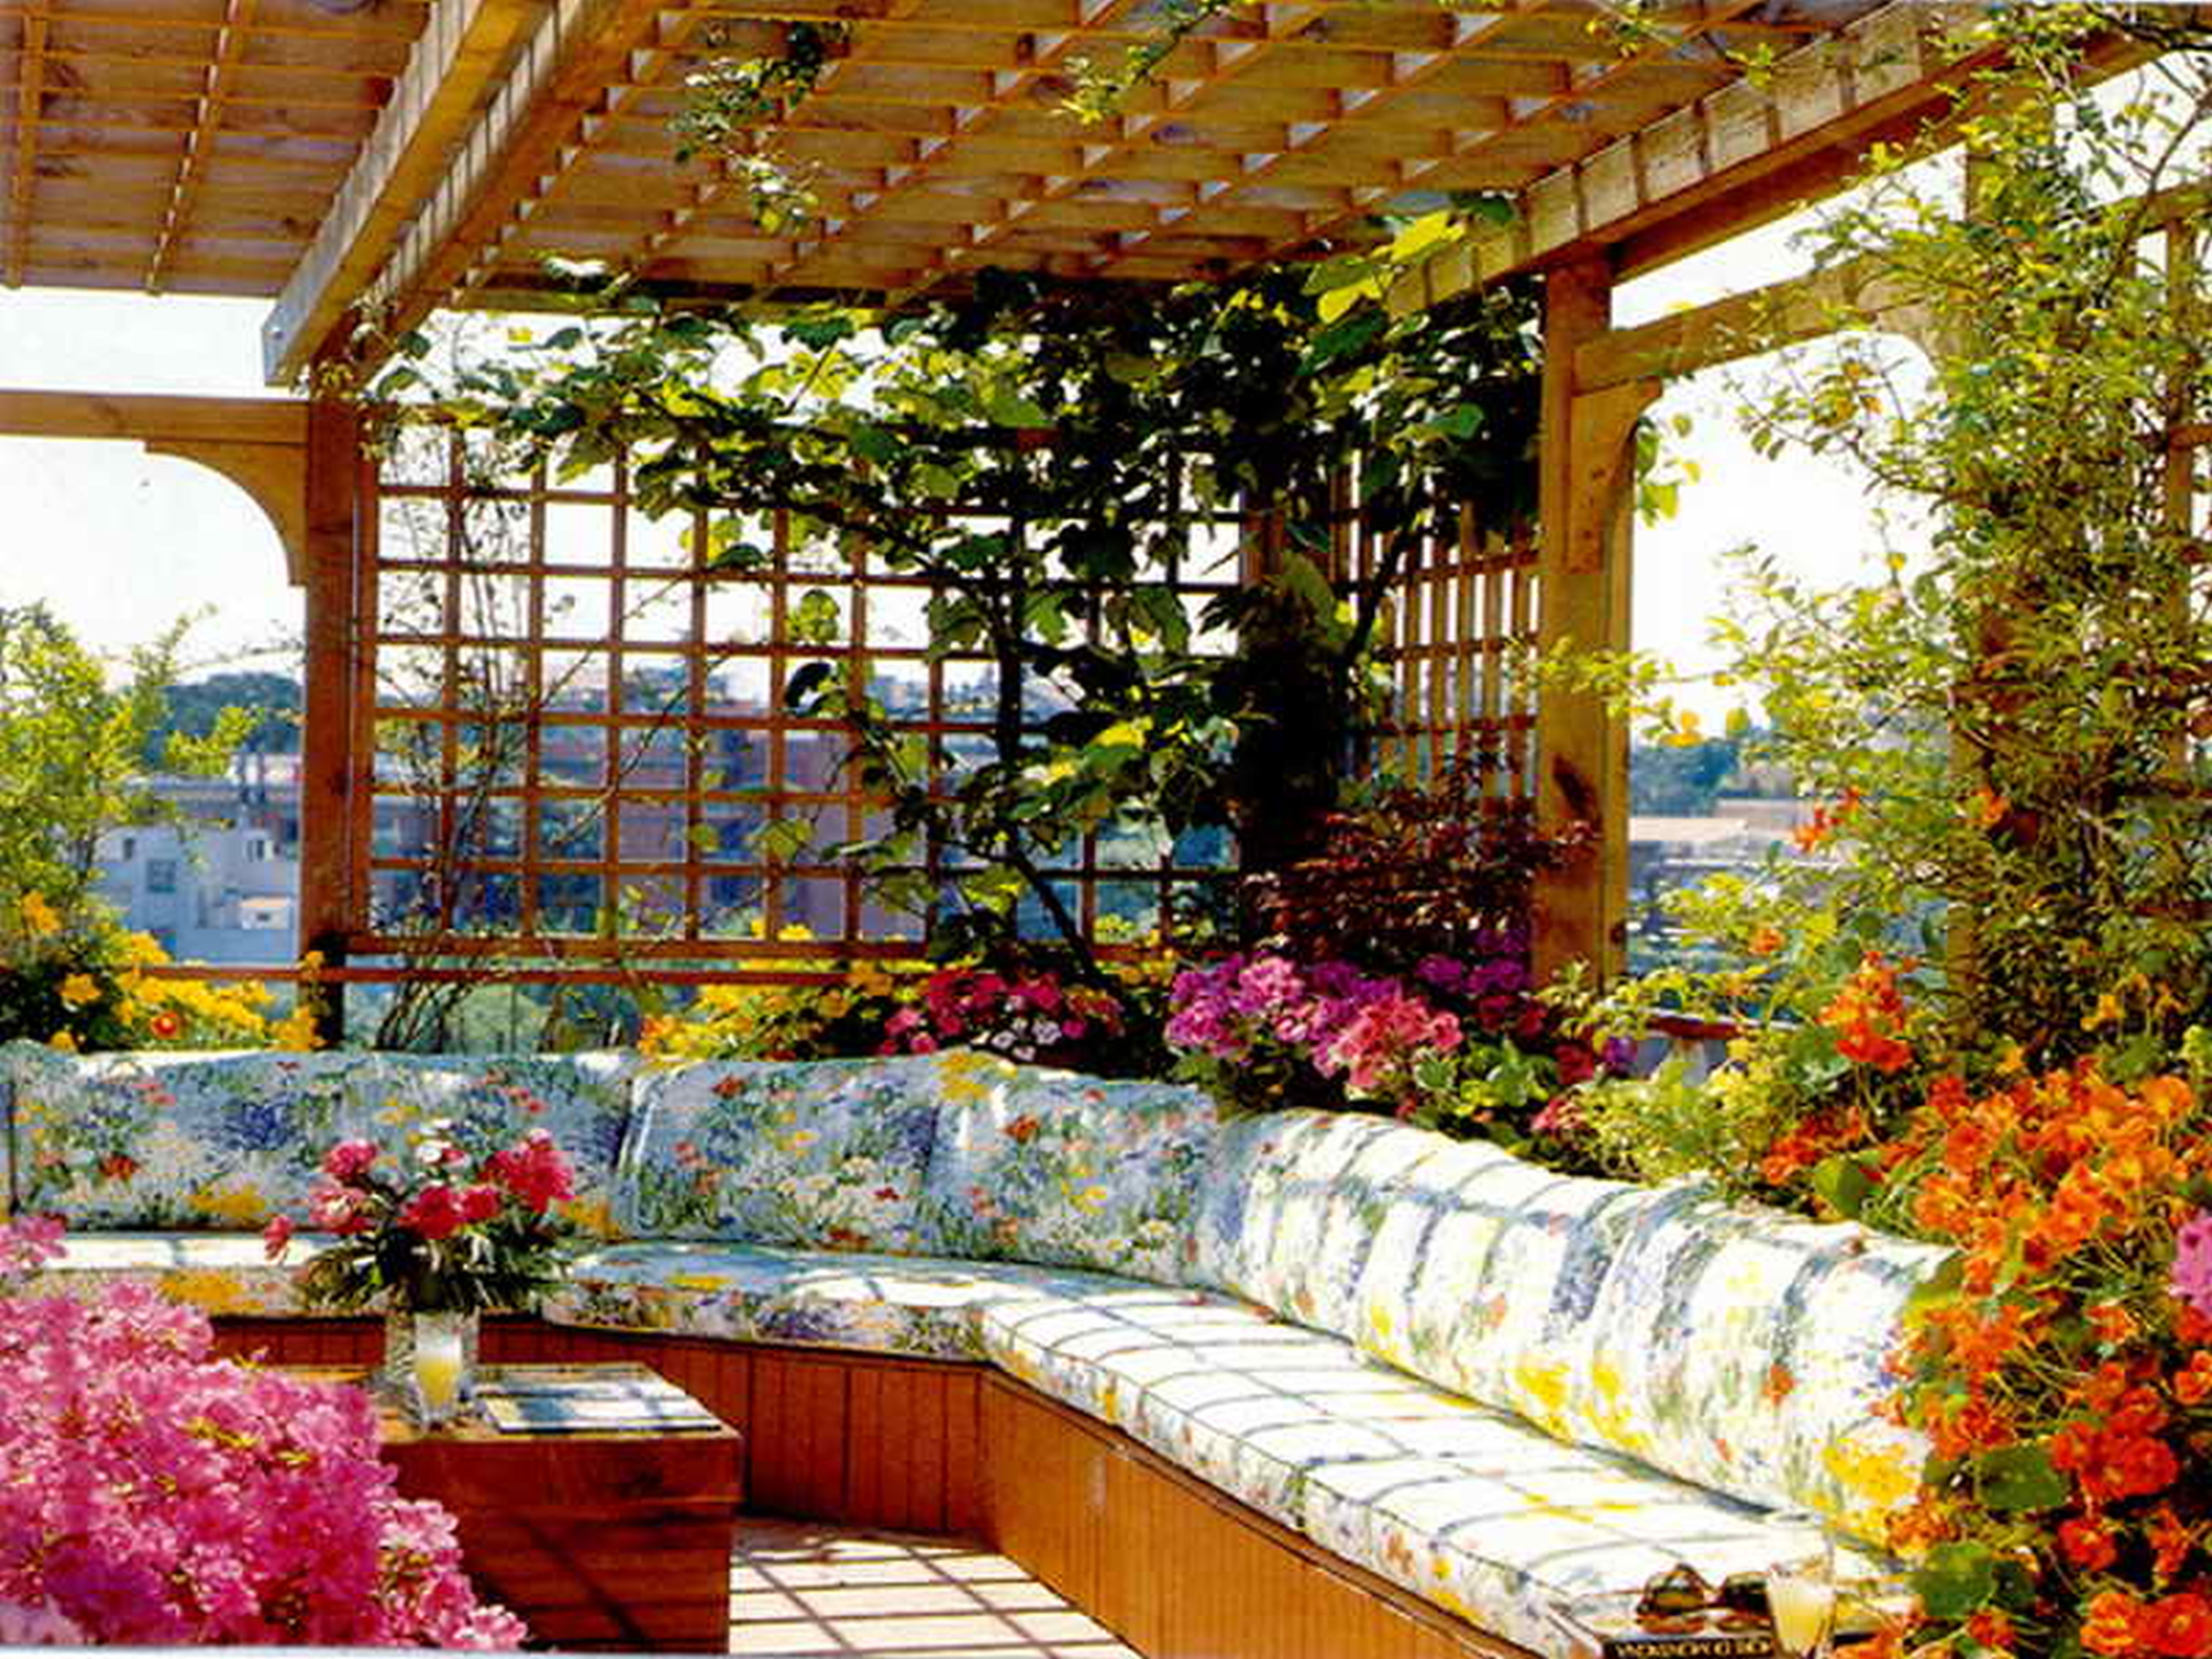 The Terrace Garden